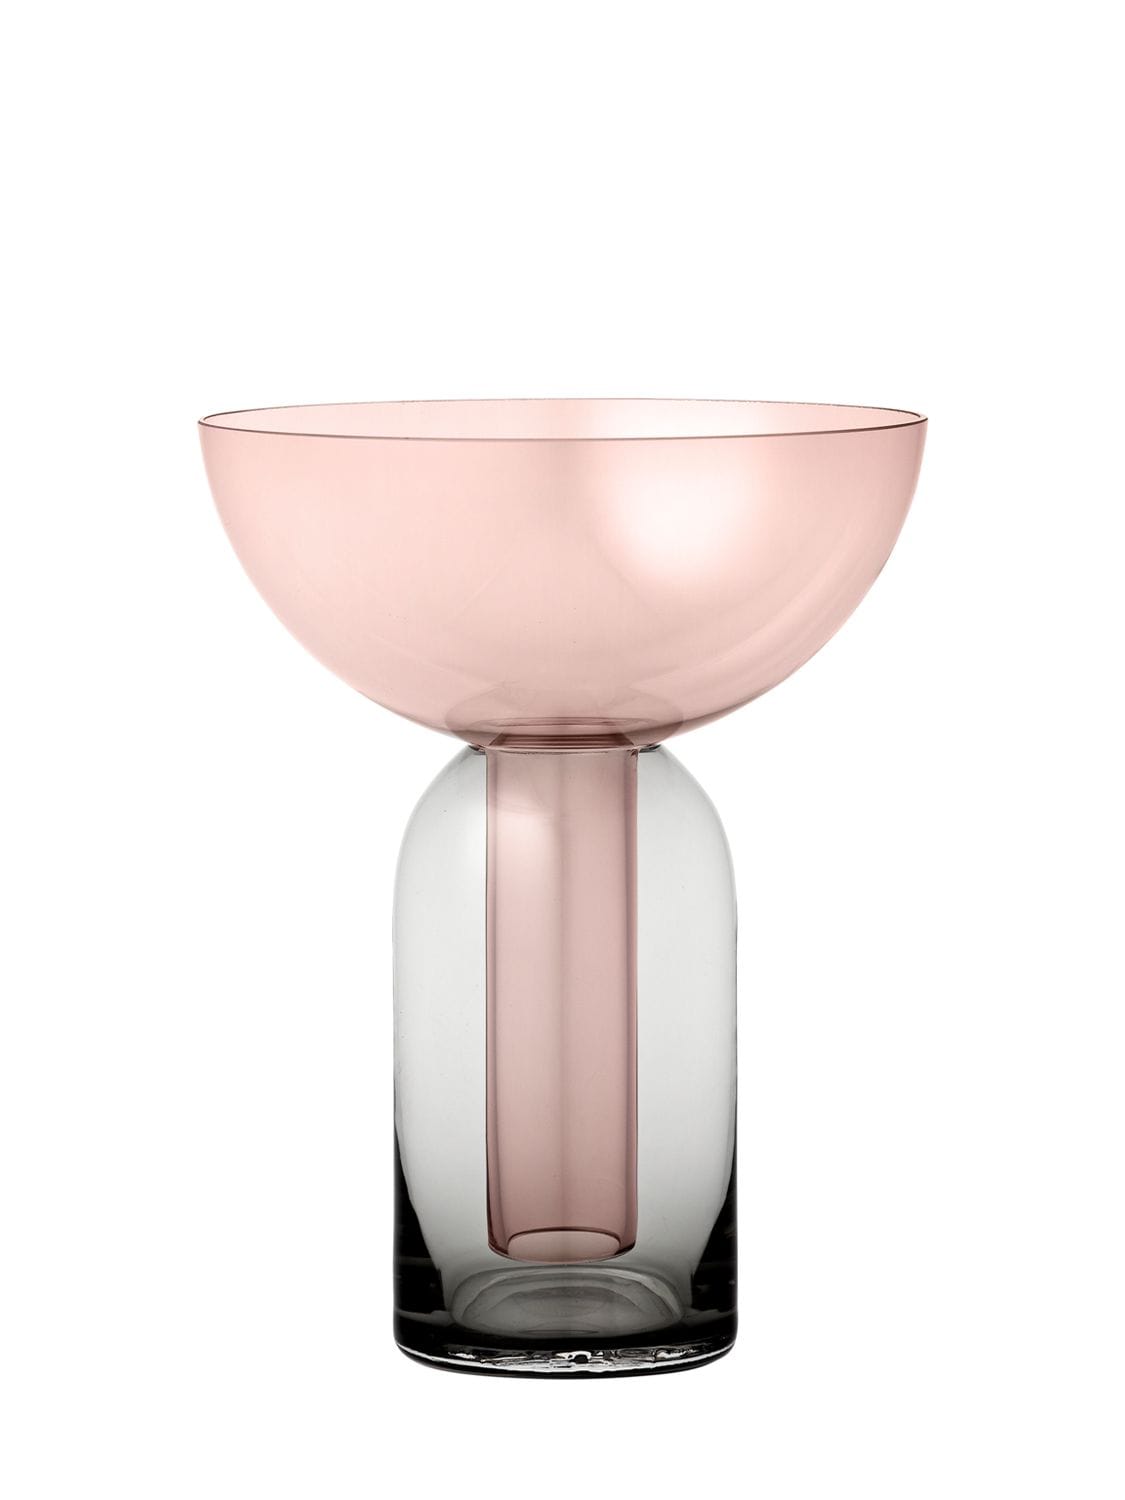 Aytm Torus Vase In Pink